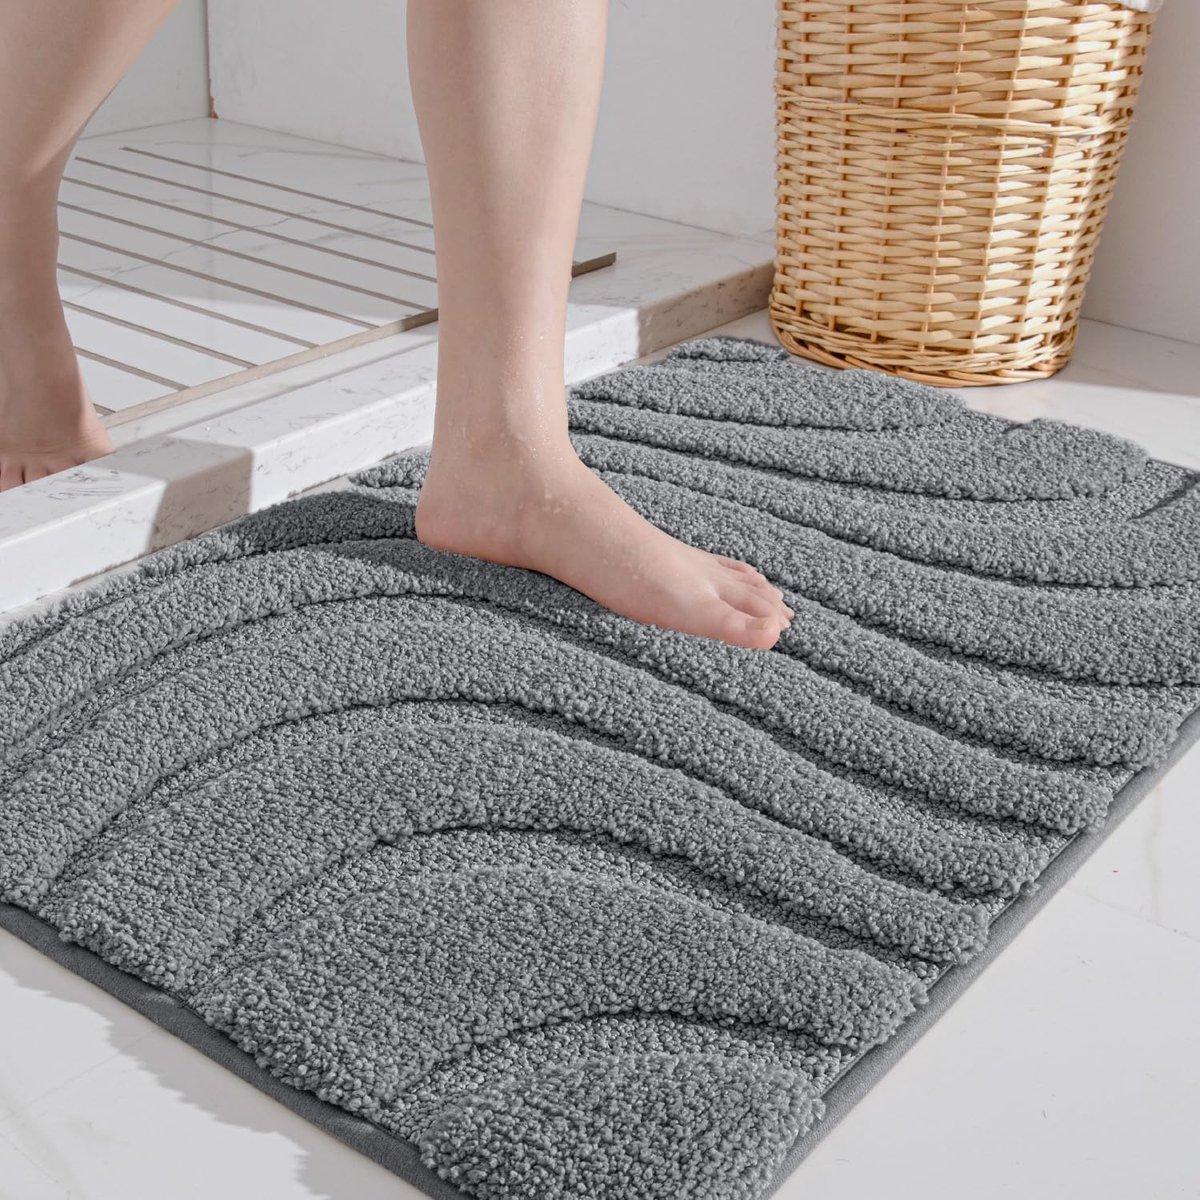 Badmat antislip 40 x 60 cm, zachte microvezel badmat, waterabsorberend badkamertapijt, machinewasbare badmat voor bad, douche en badkamer - donkergrijs